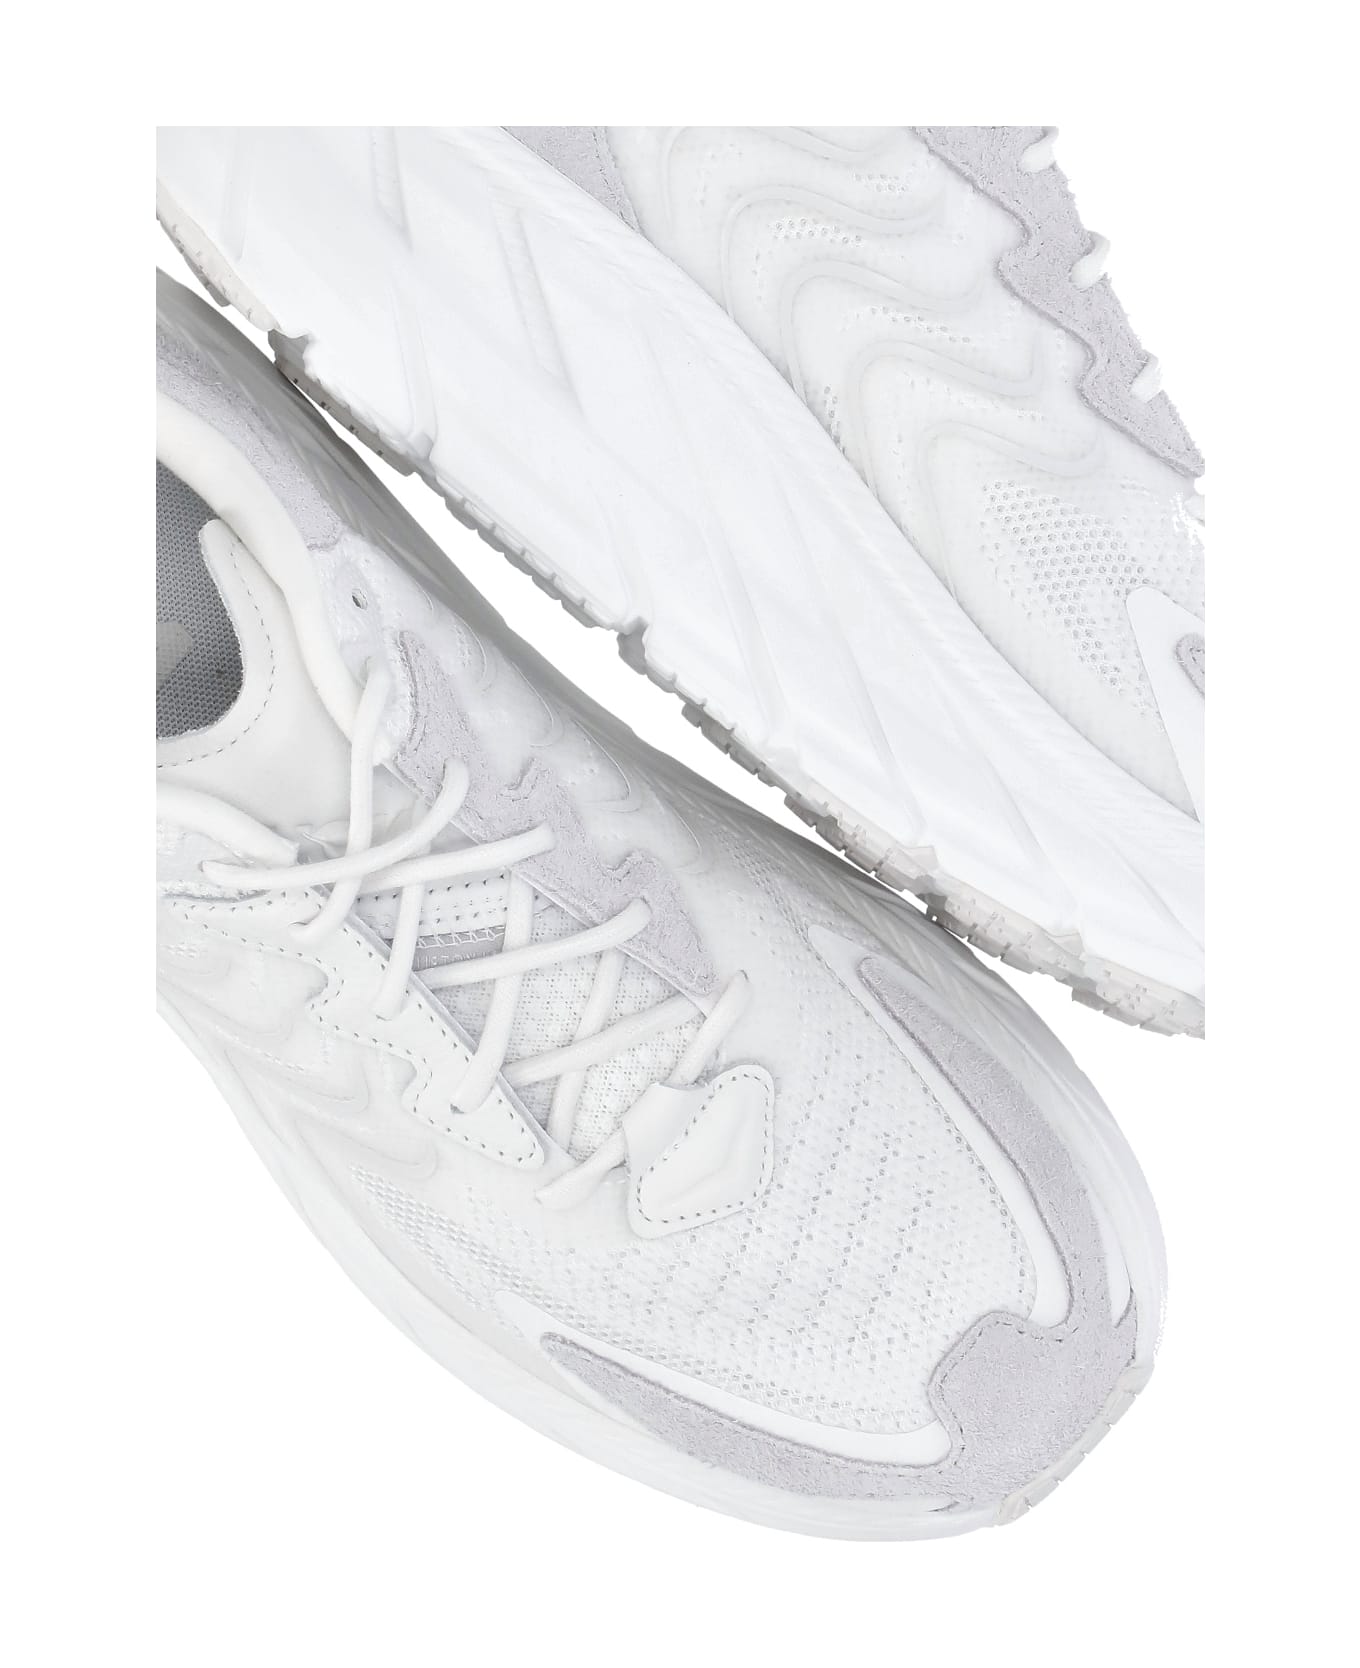 Hoka One One Clifton Ls Sneakers - White